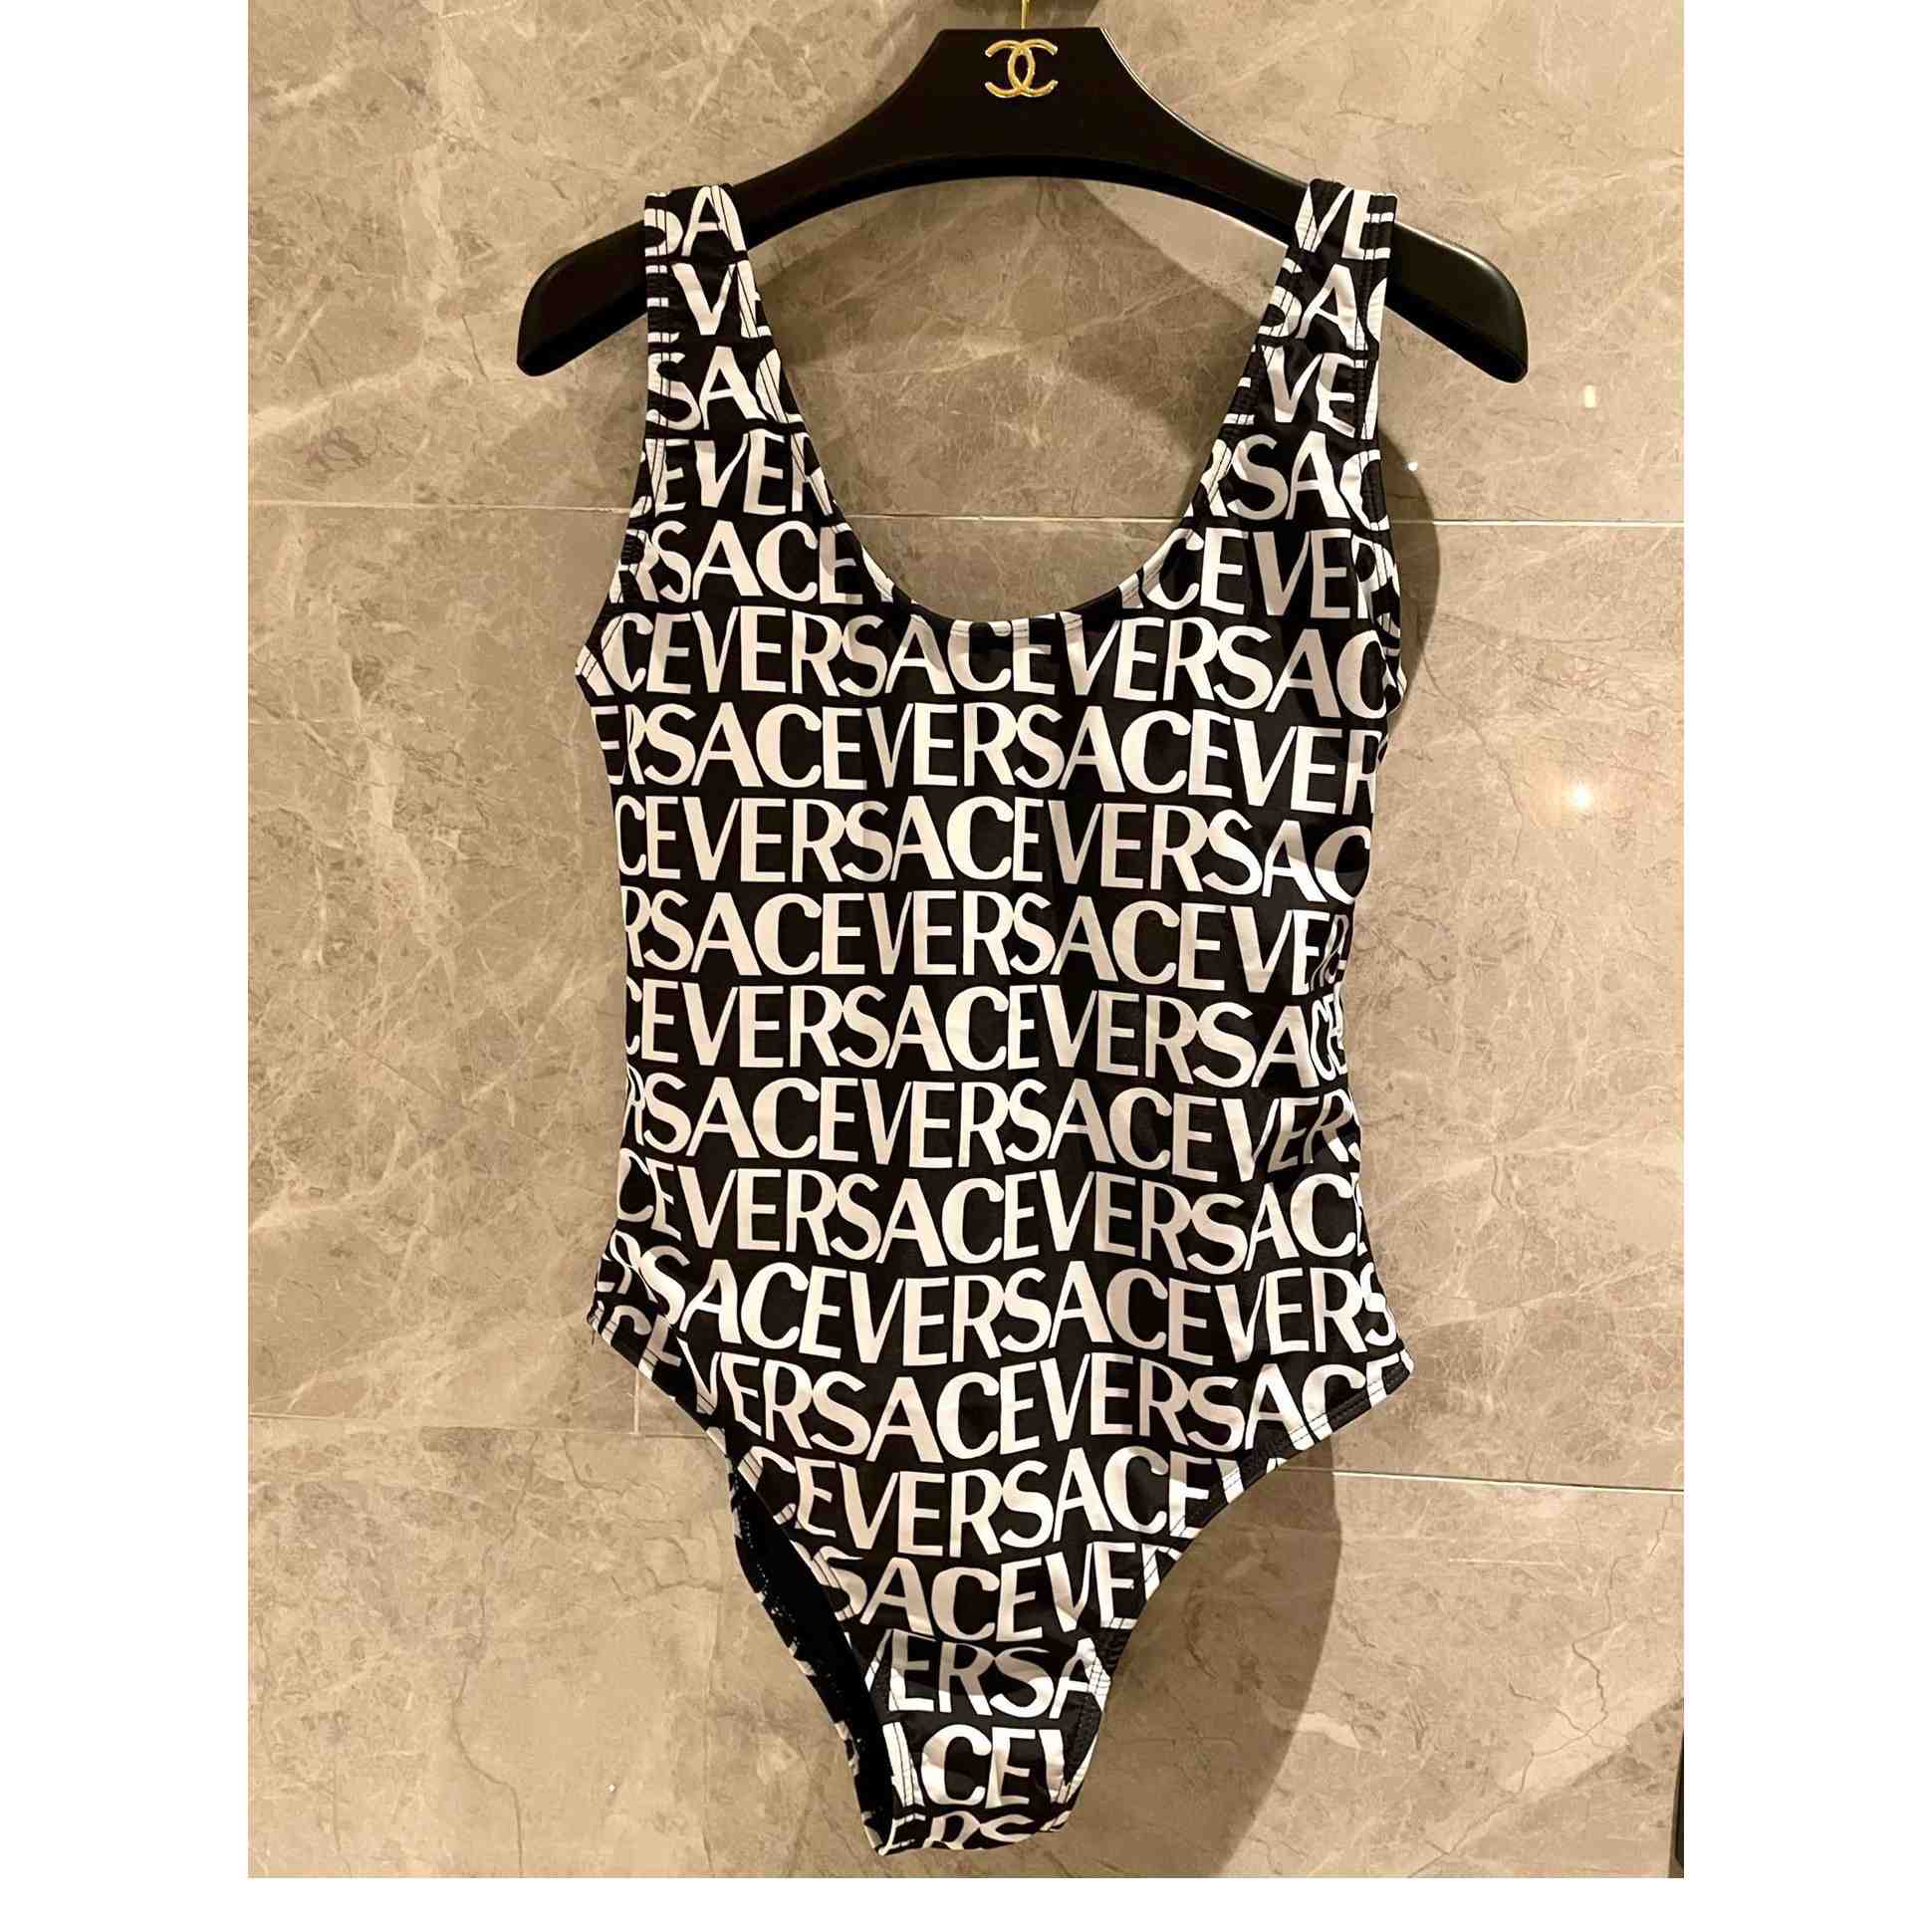 Versace Allover One-Piece Swimsuit - DesignerGu